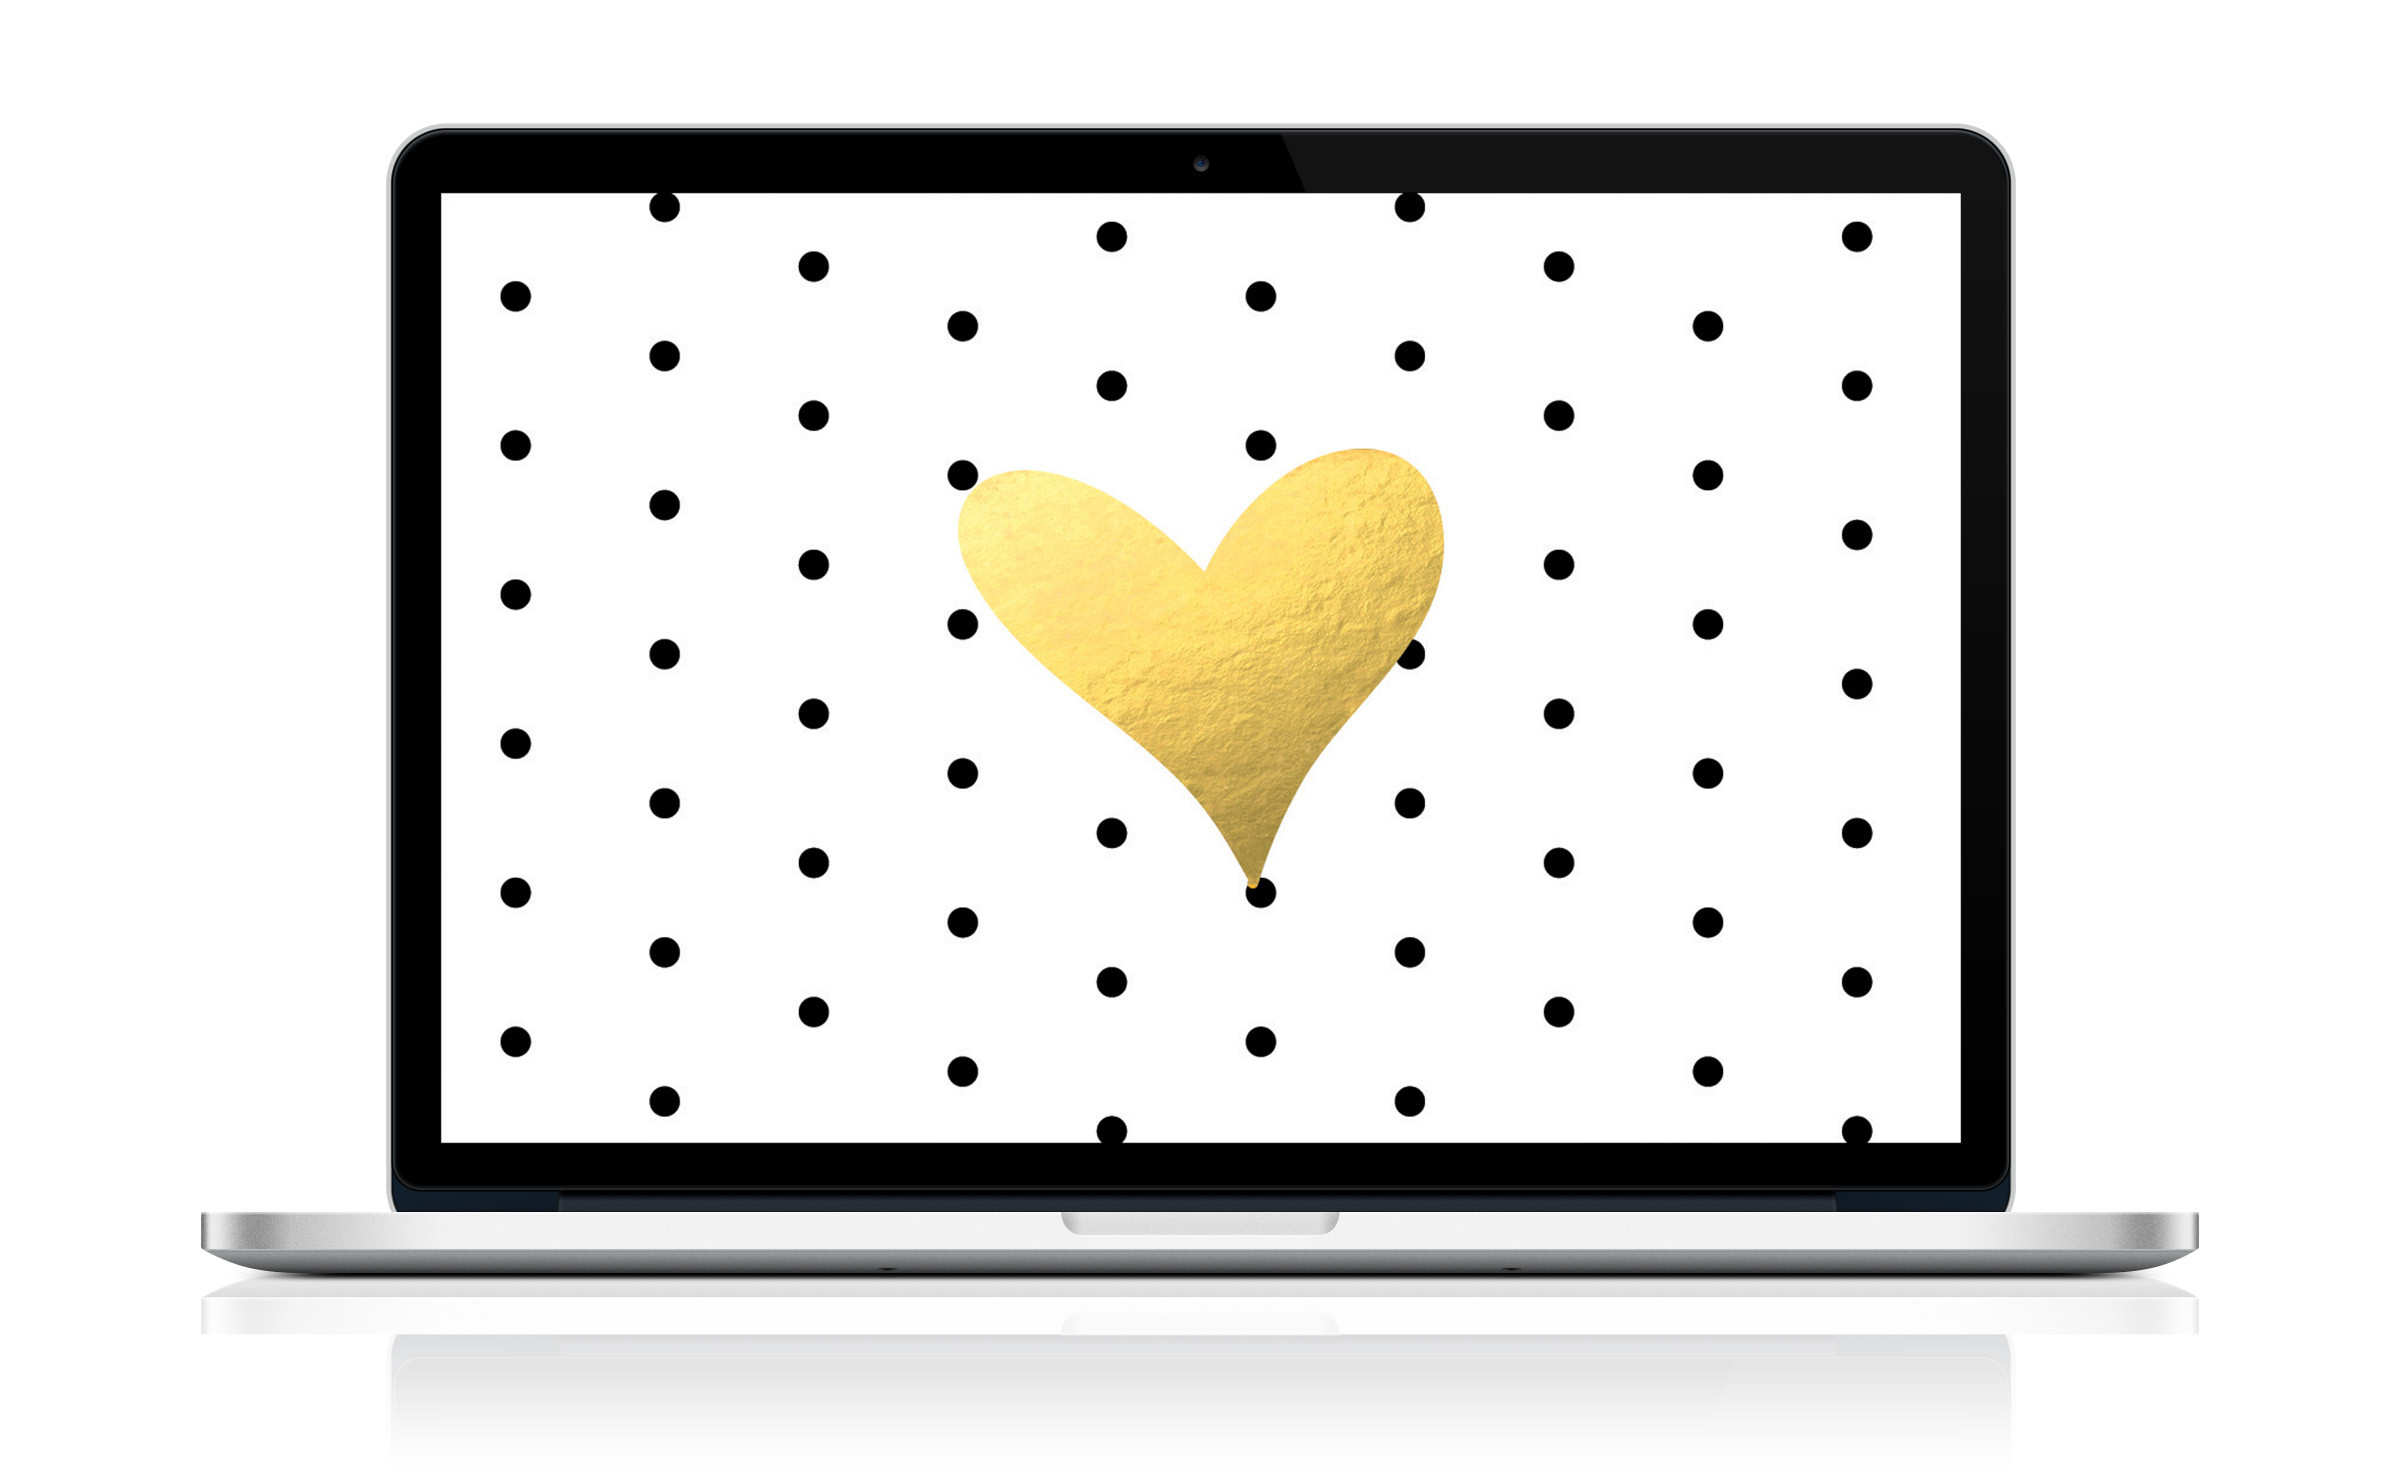 2400x1476 Free Desktop or Laptop Wallpaper! Black & White Dots + Gold Heart!